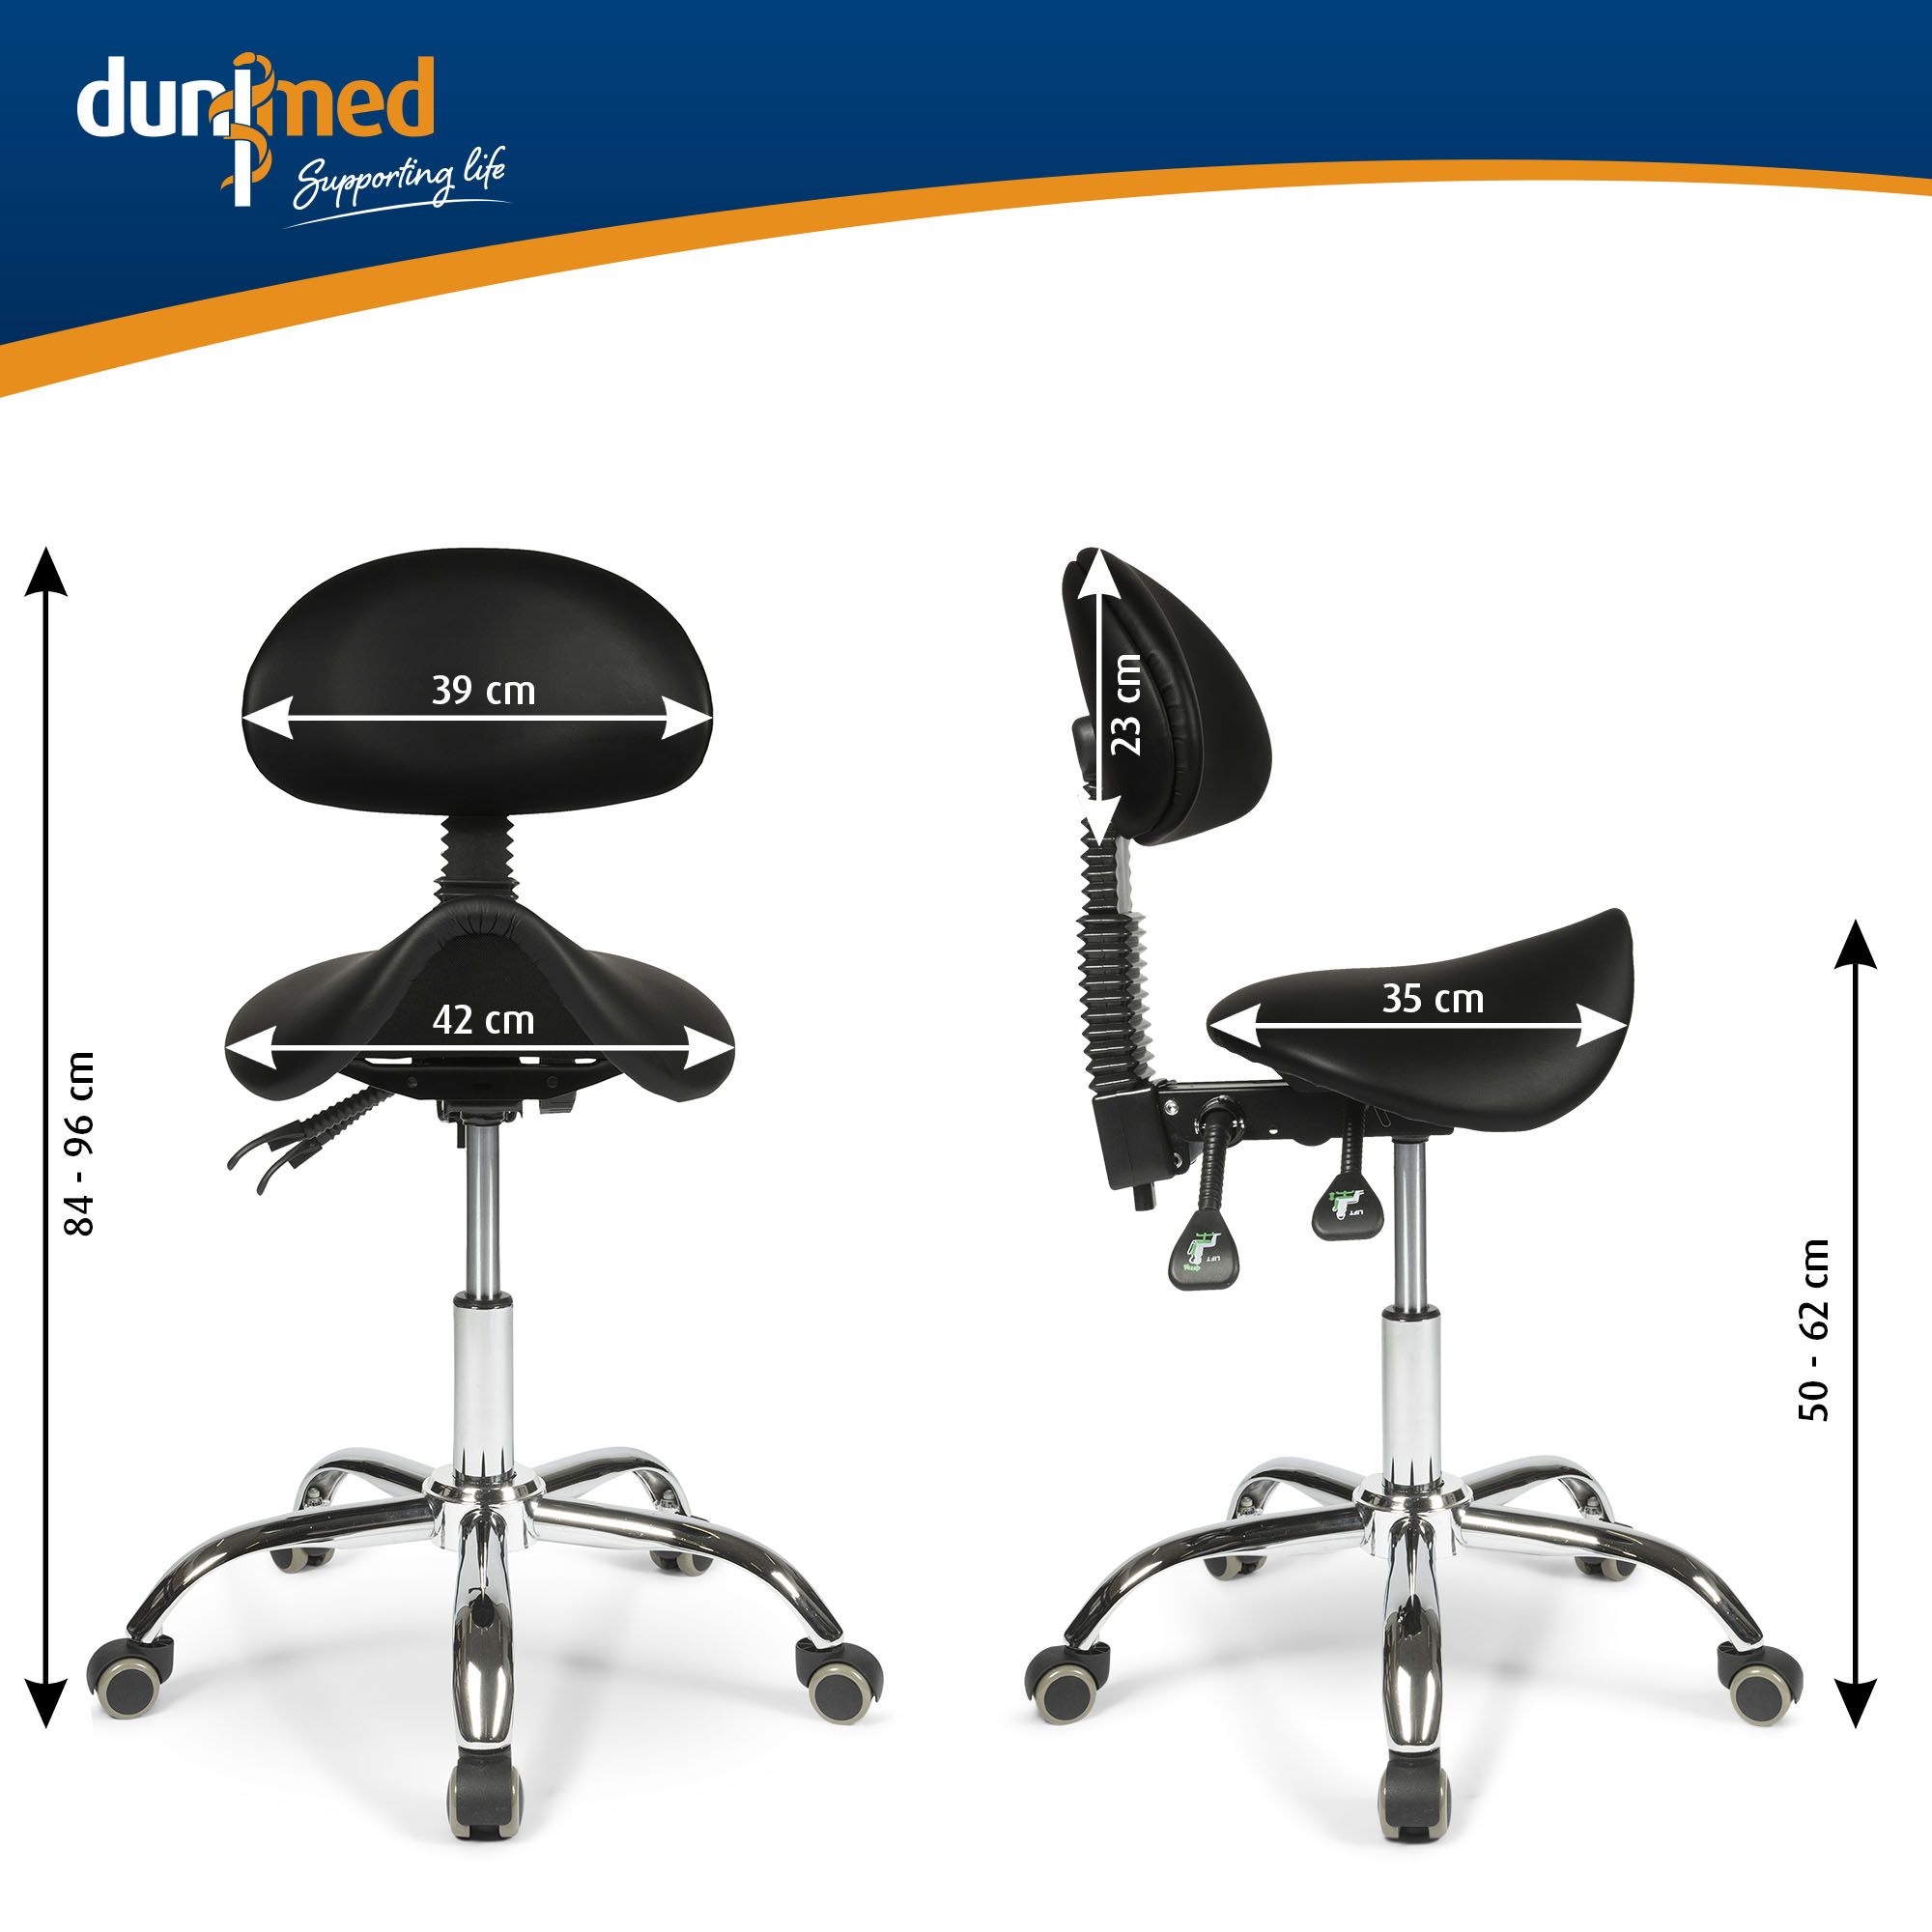 Dunimed ergonomic saddle stool with backrest black size chart